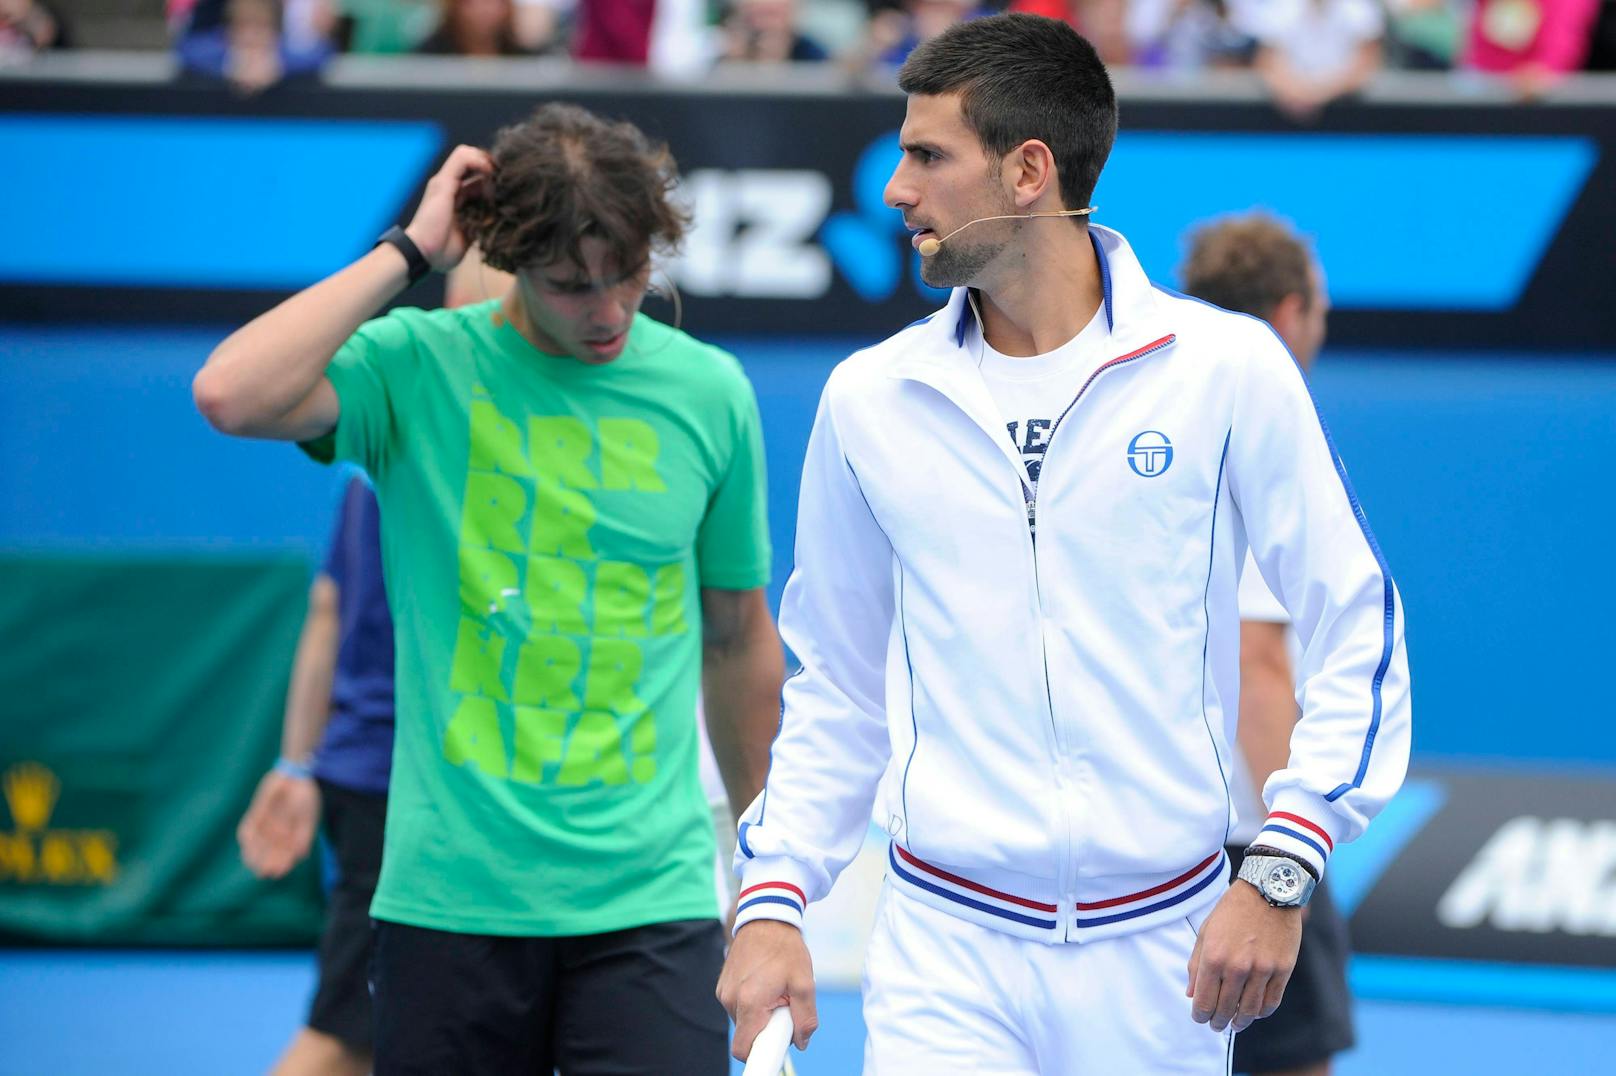 "Nicht einverstanden!" Djokovic stellt sich gegen Nadal